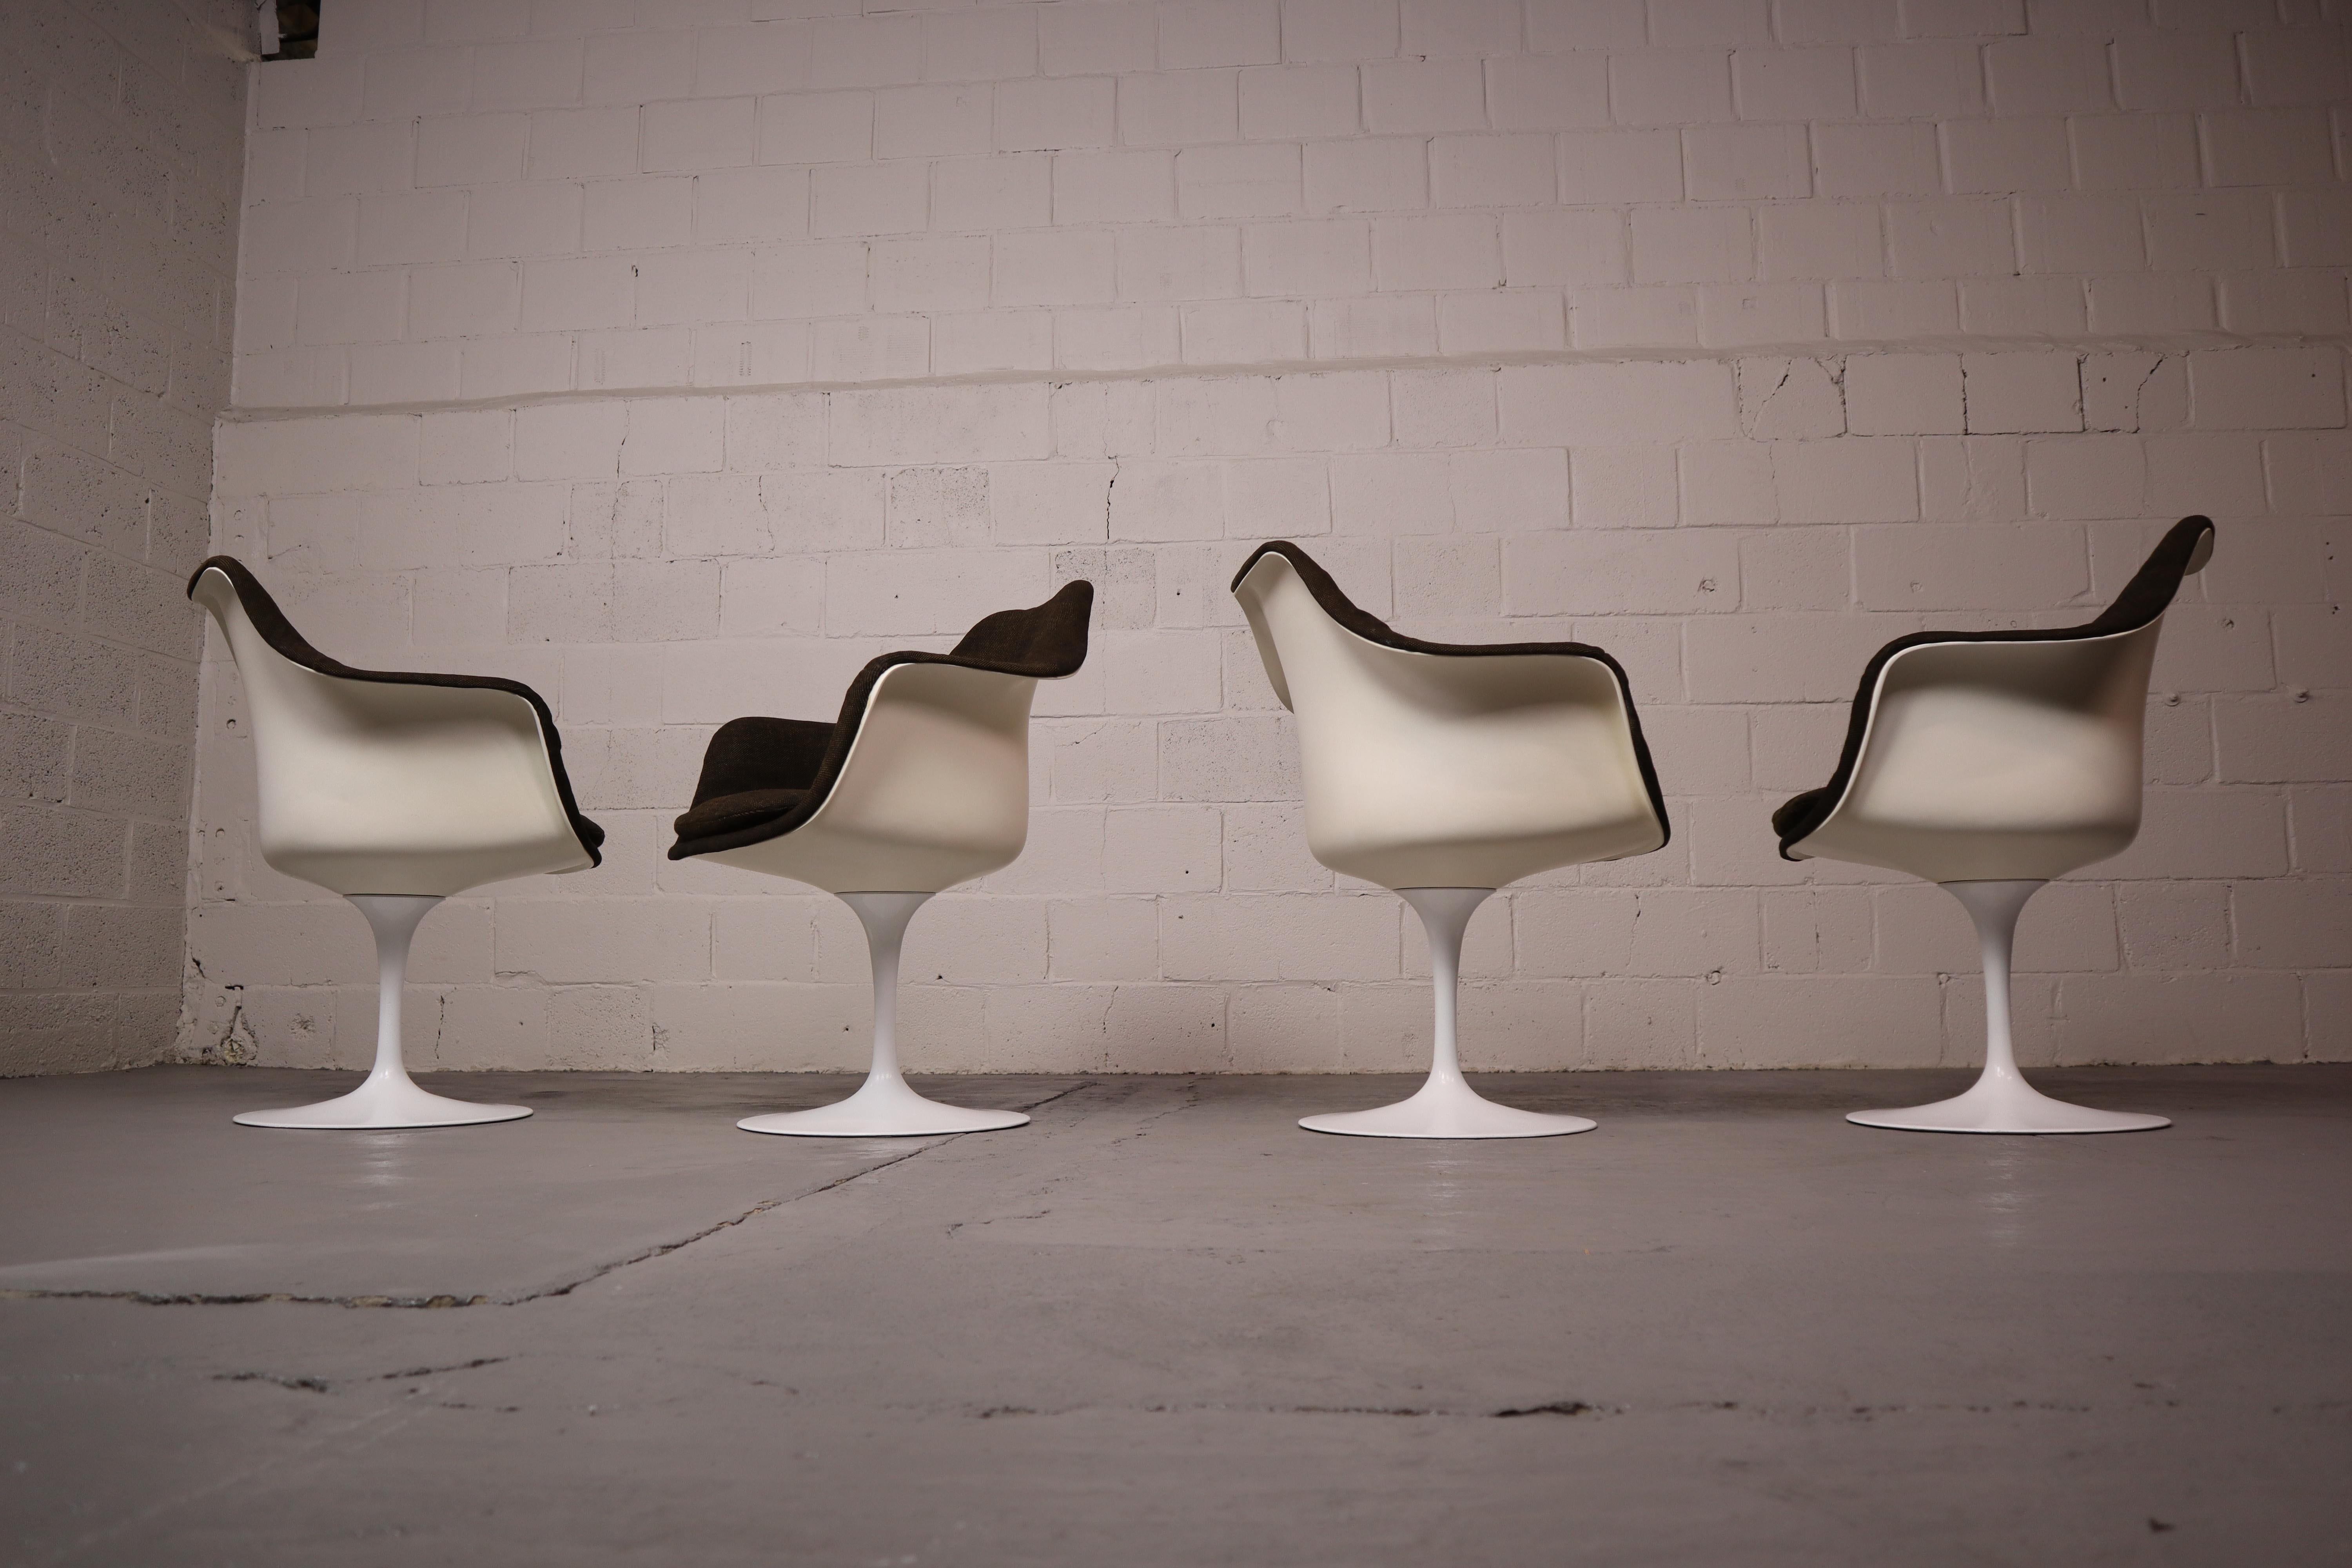 Fantastisches Paar drehbare Tulip-Sessel Modell 150 von Eero Saarinen für Knoll International. Entworfen im Jahr 1956.
Diese sind aus den 1970er Jahren.
Designklassiker aus der Pedestal Collection!

Der Tulpensessel, der nicht nur der Blume, sondern